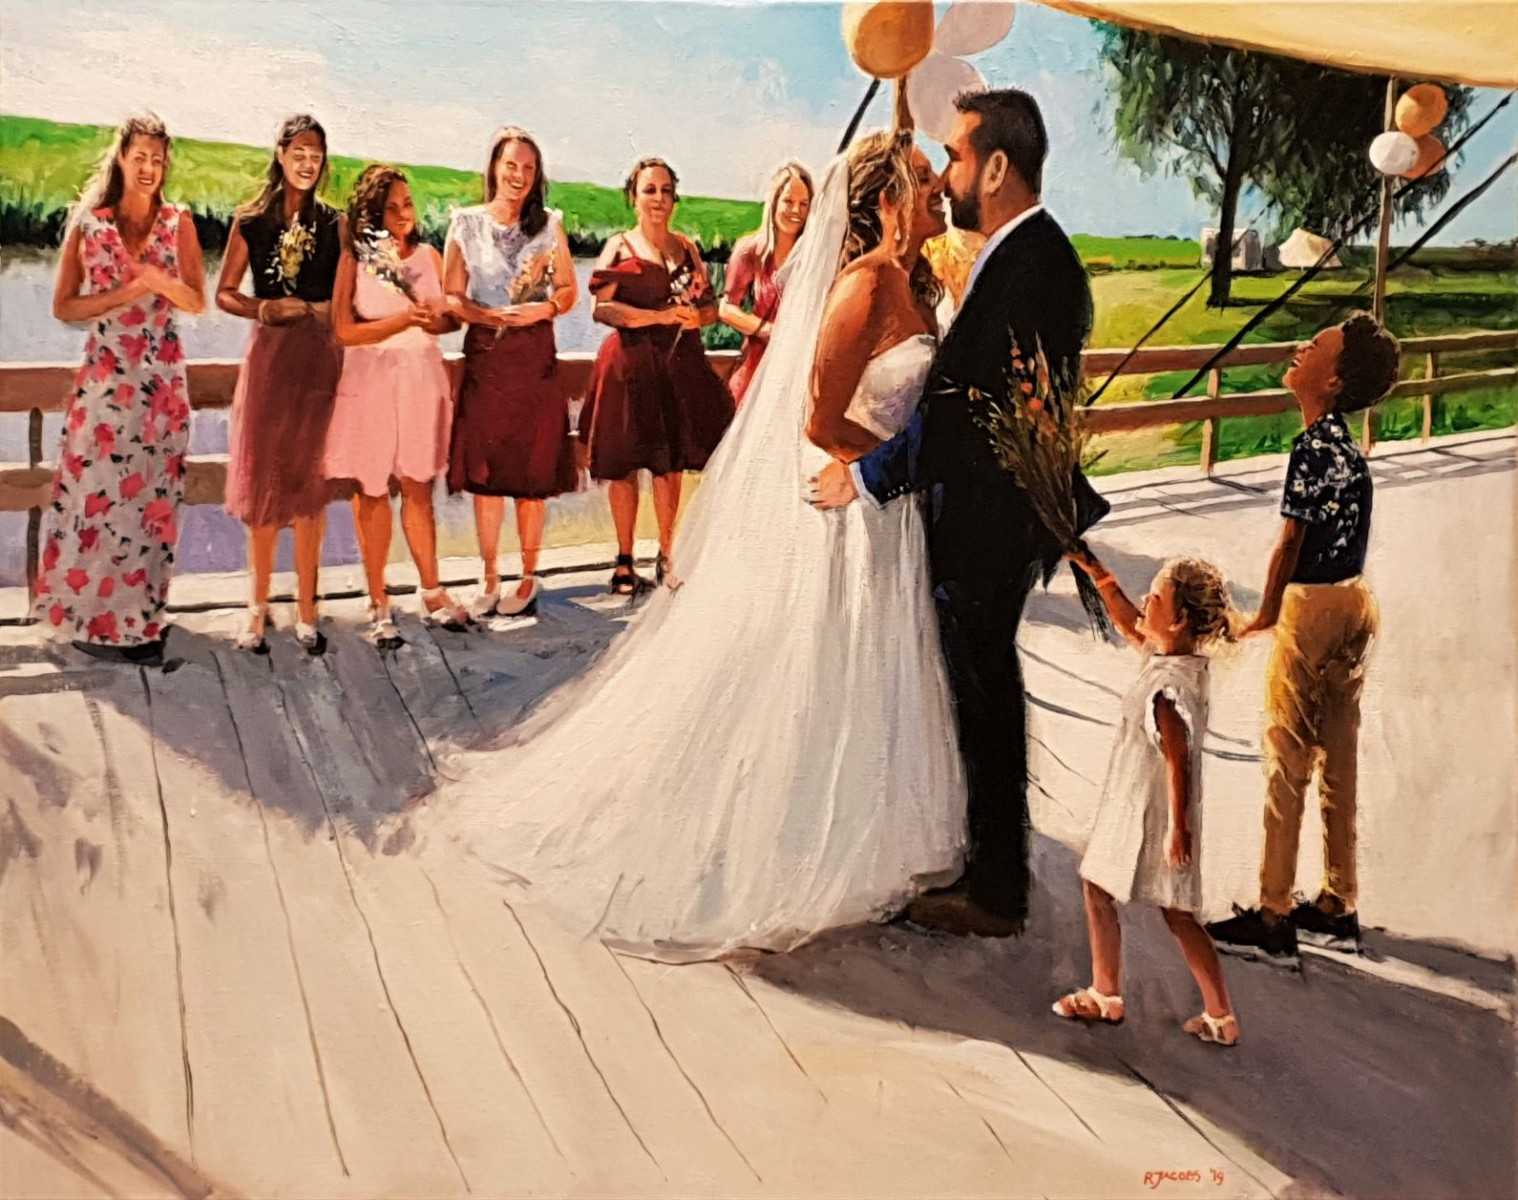 Rob Jacobs schildert doek van 80x100cm tijdens de trouwceremonie.